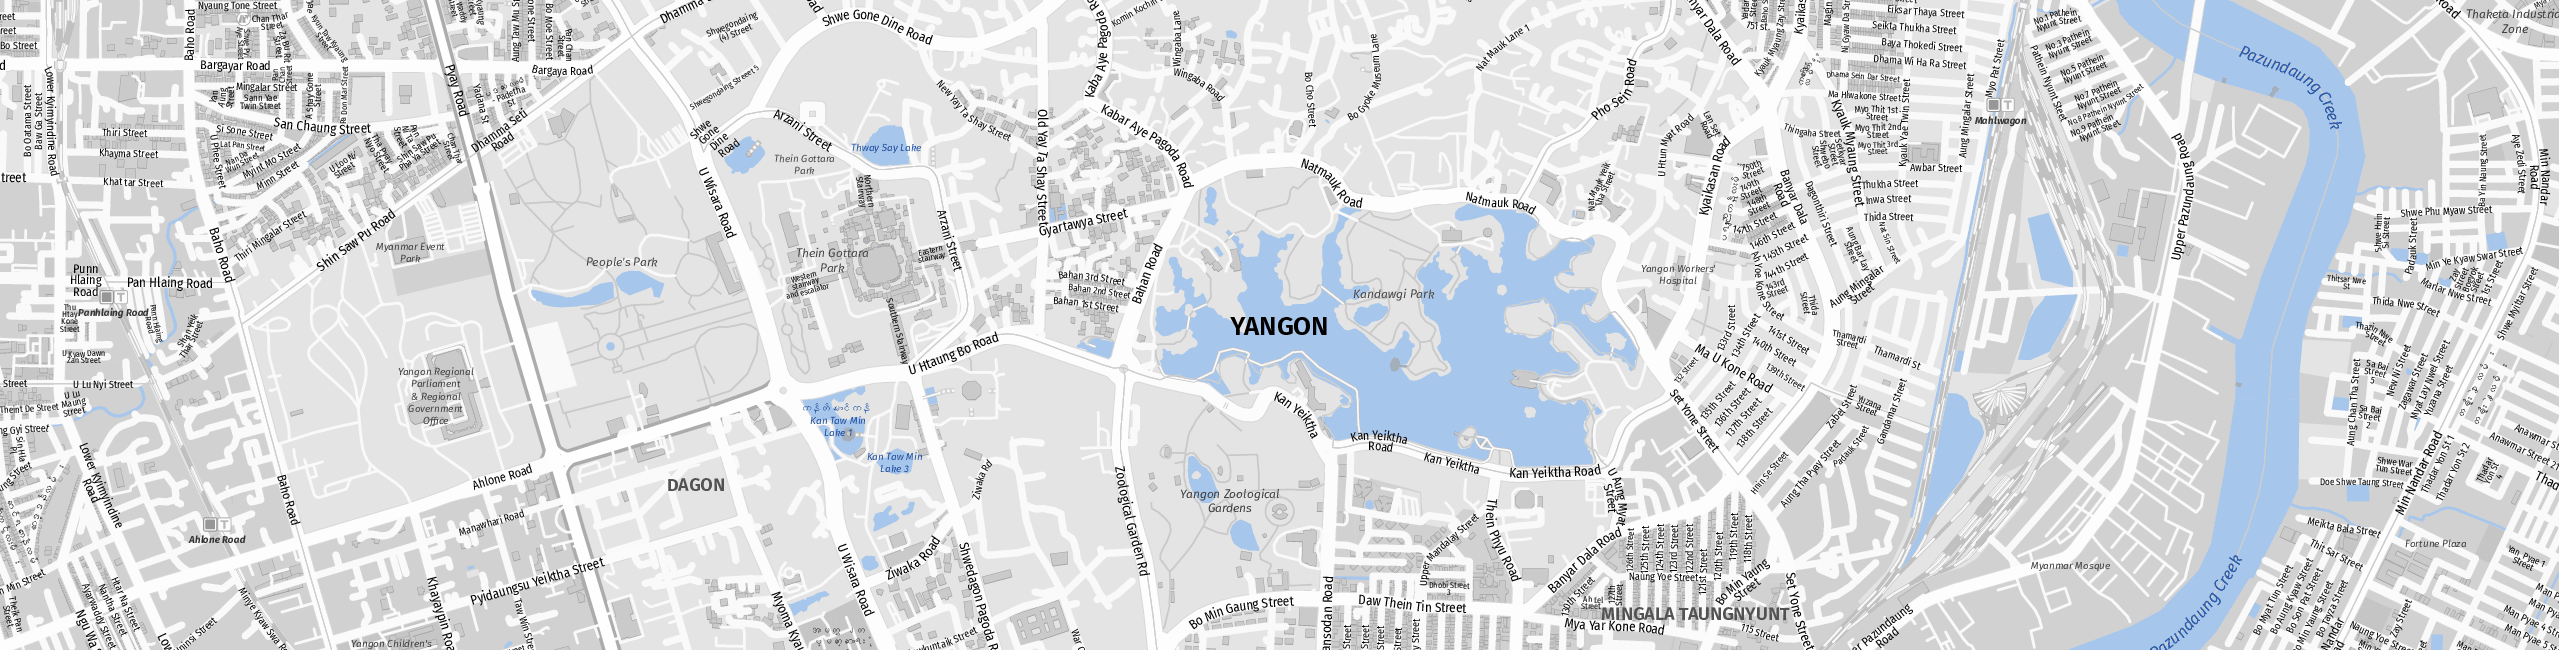 Stadtplan Yangon zum Downloaden.